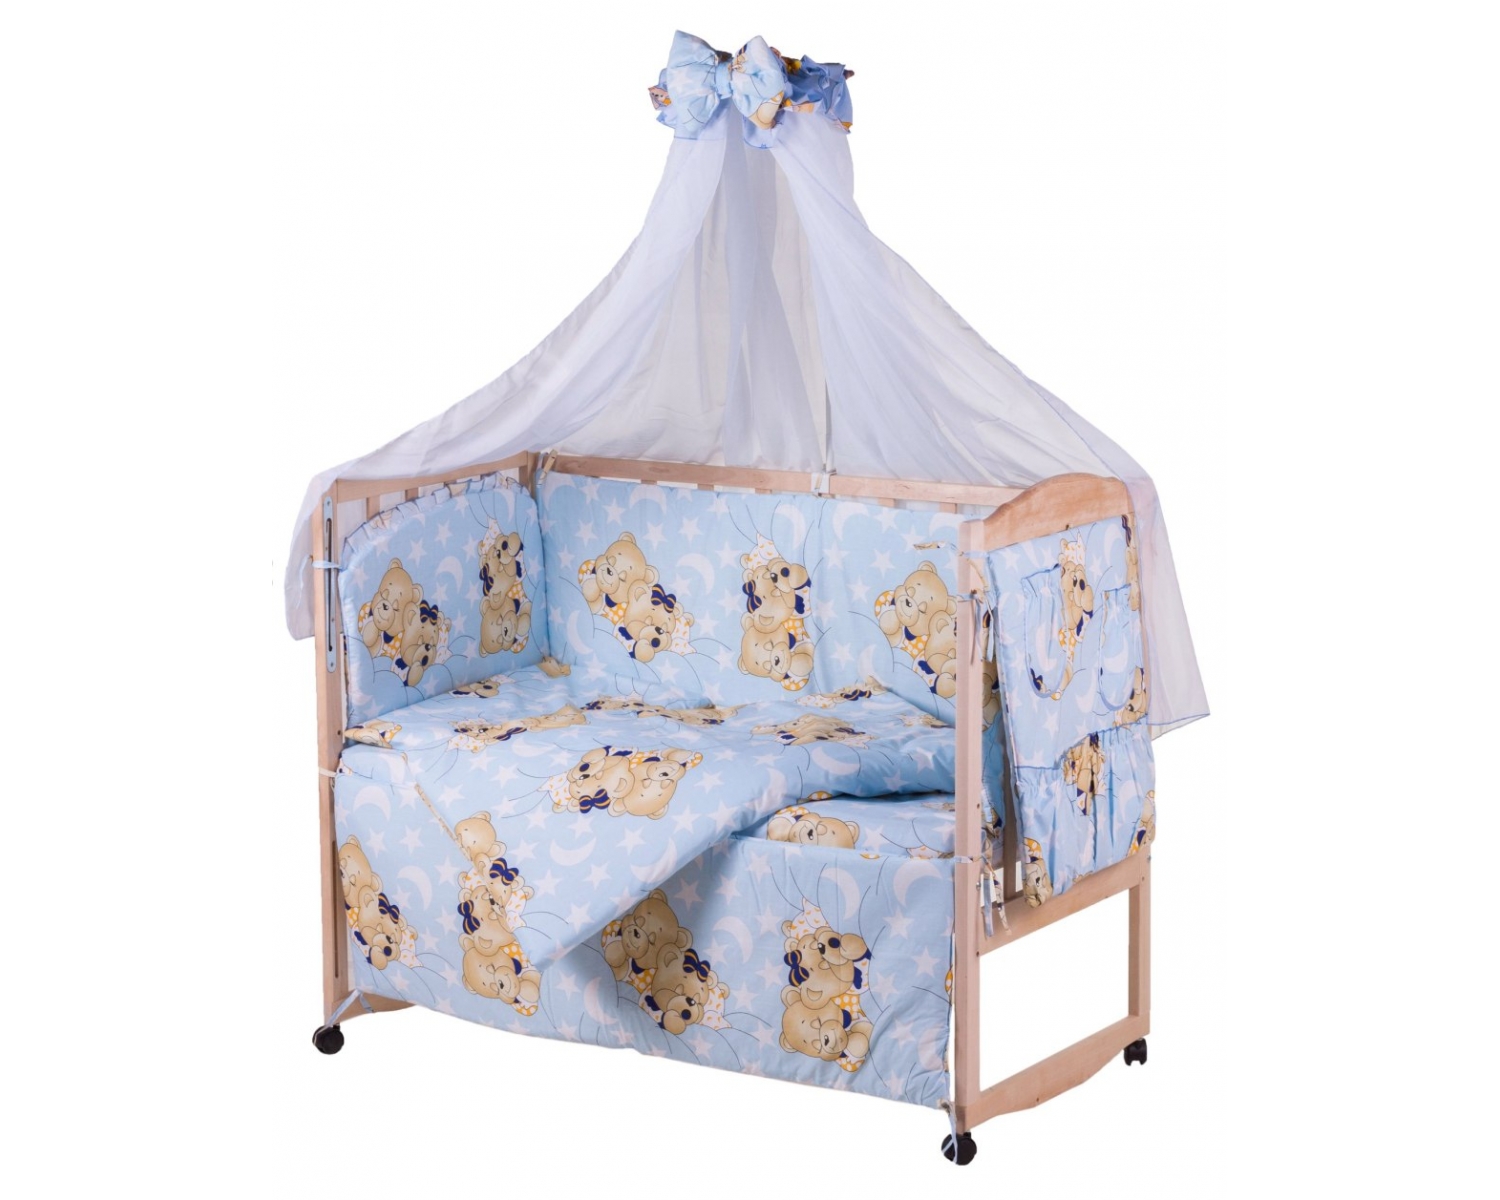 Детская постель Qvatro Gold RG-08 рисунок  голубая (мишки спят)